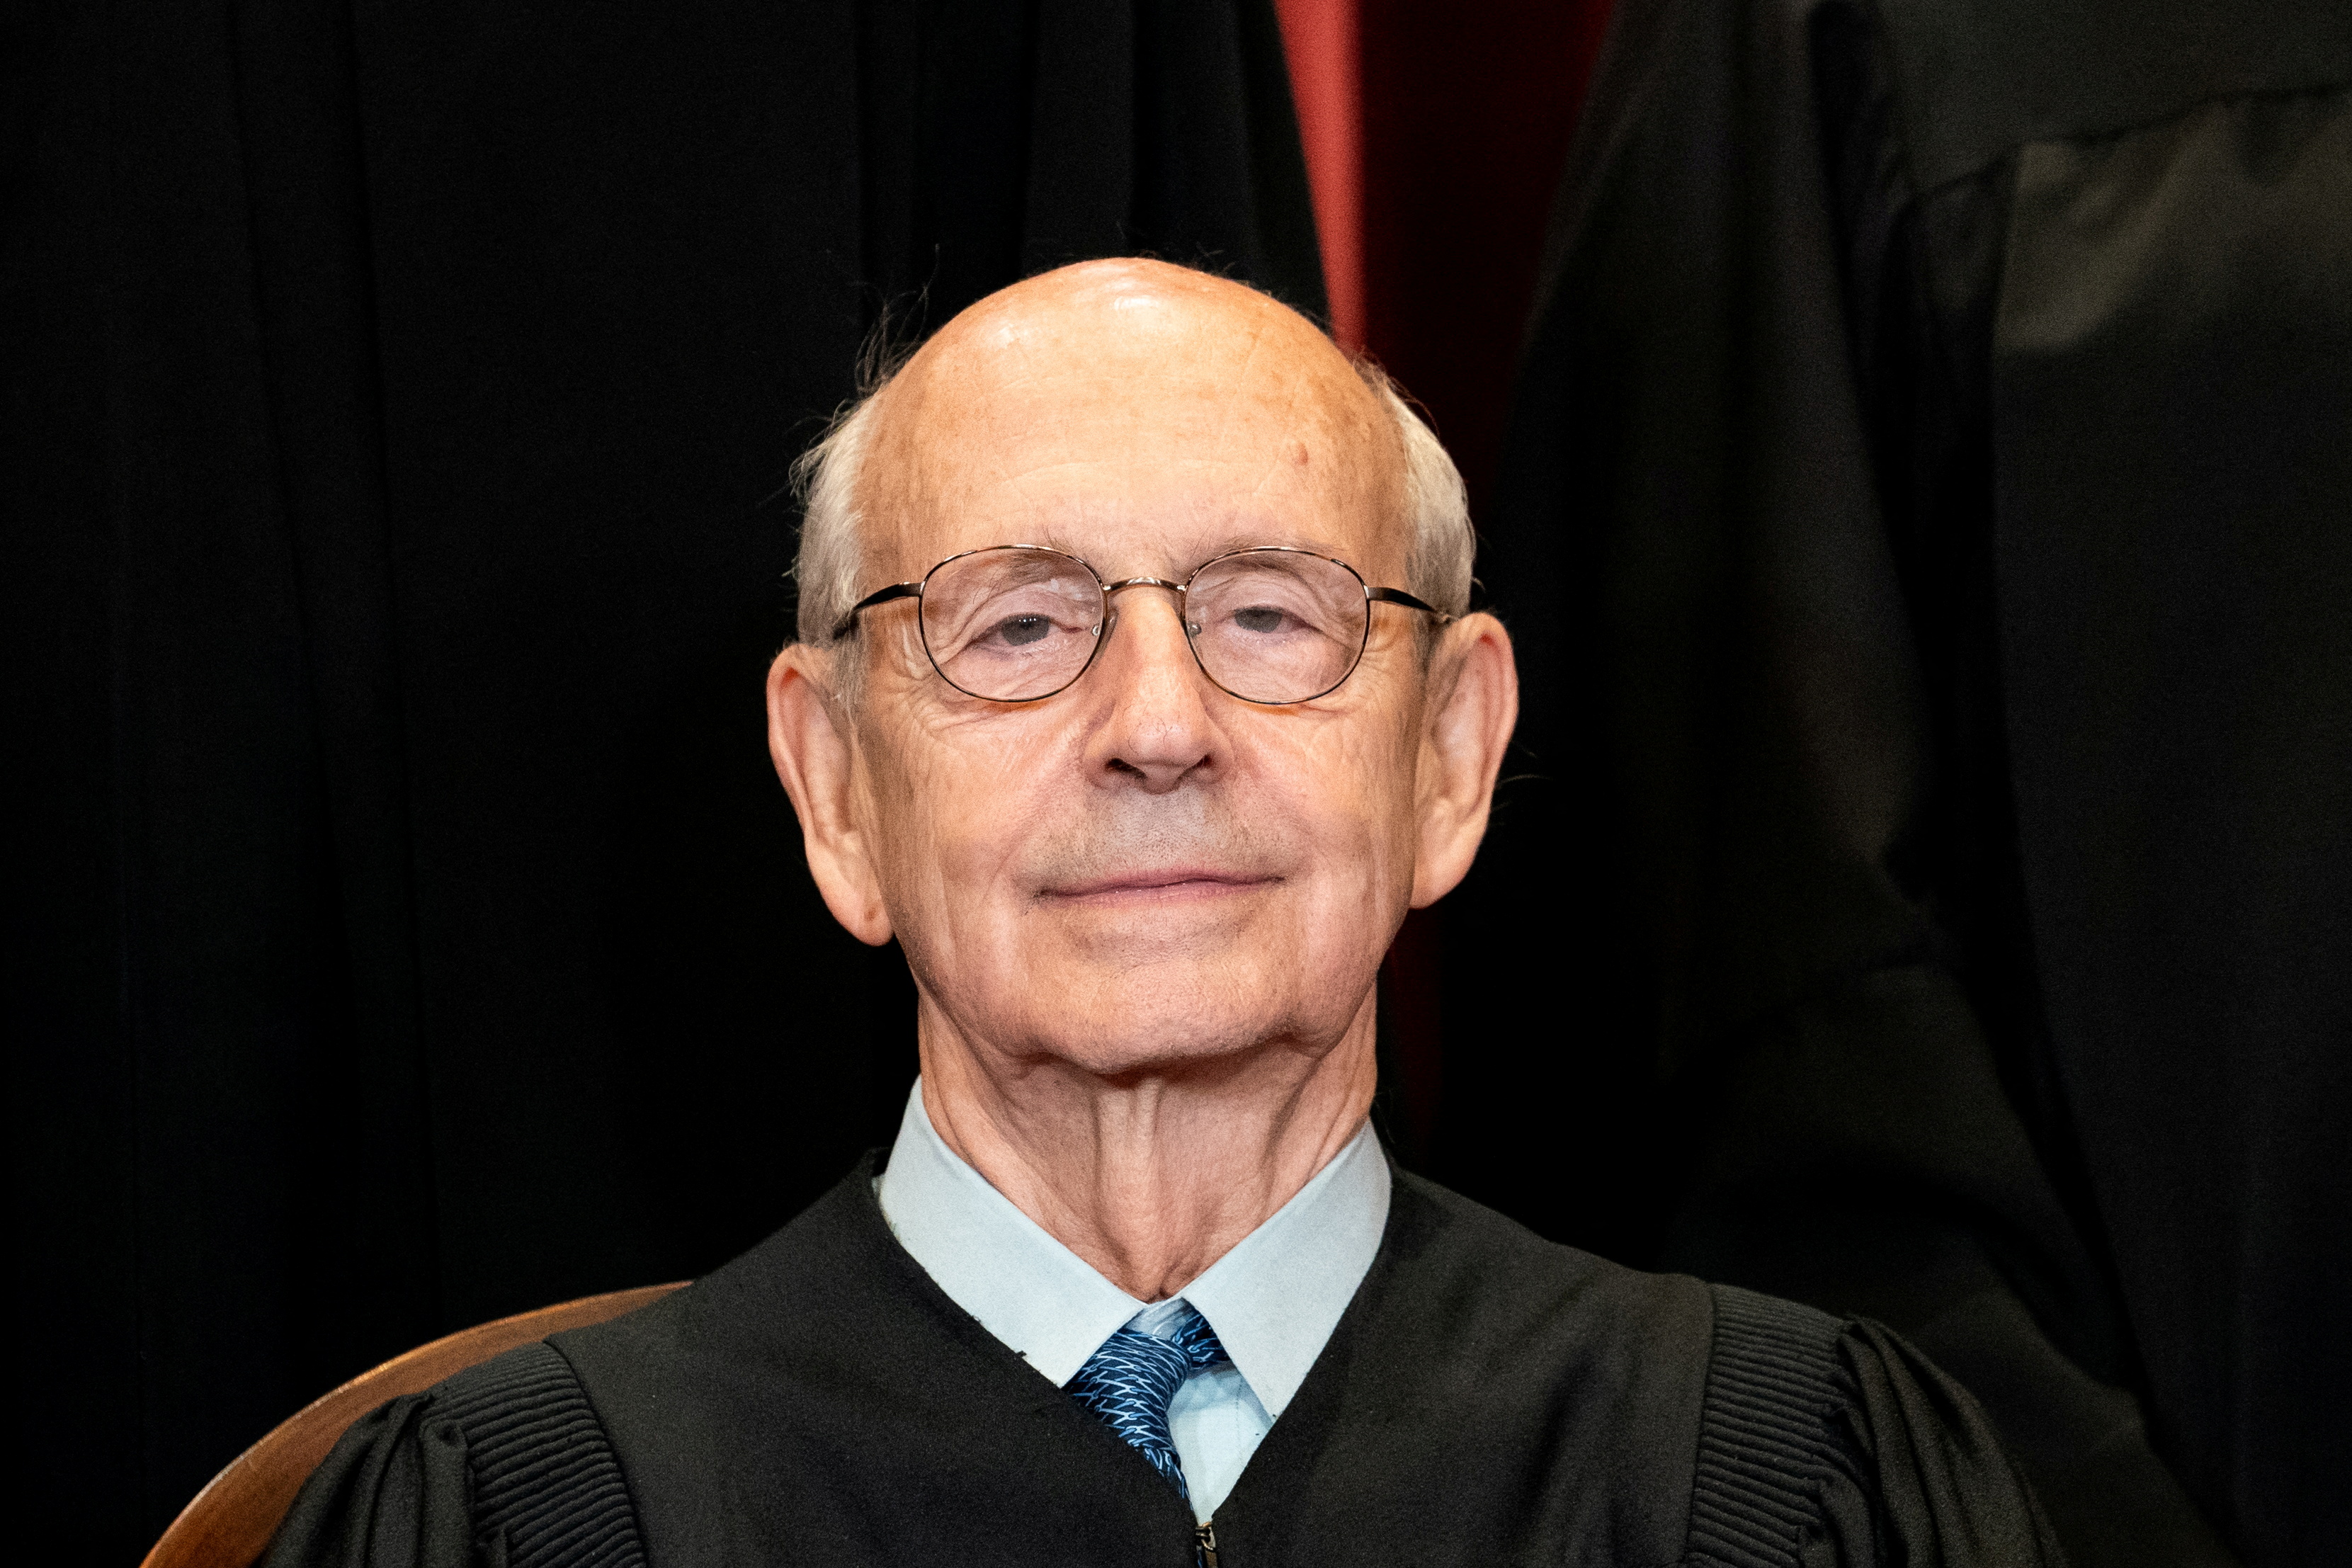 El juez de la Corte Suprema, Stephen Breyer (Erin Schaff/REUTERS)